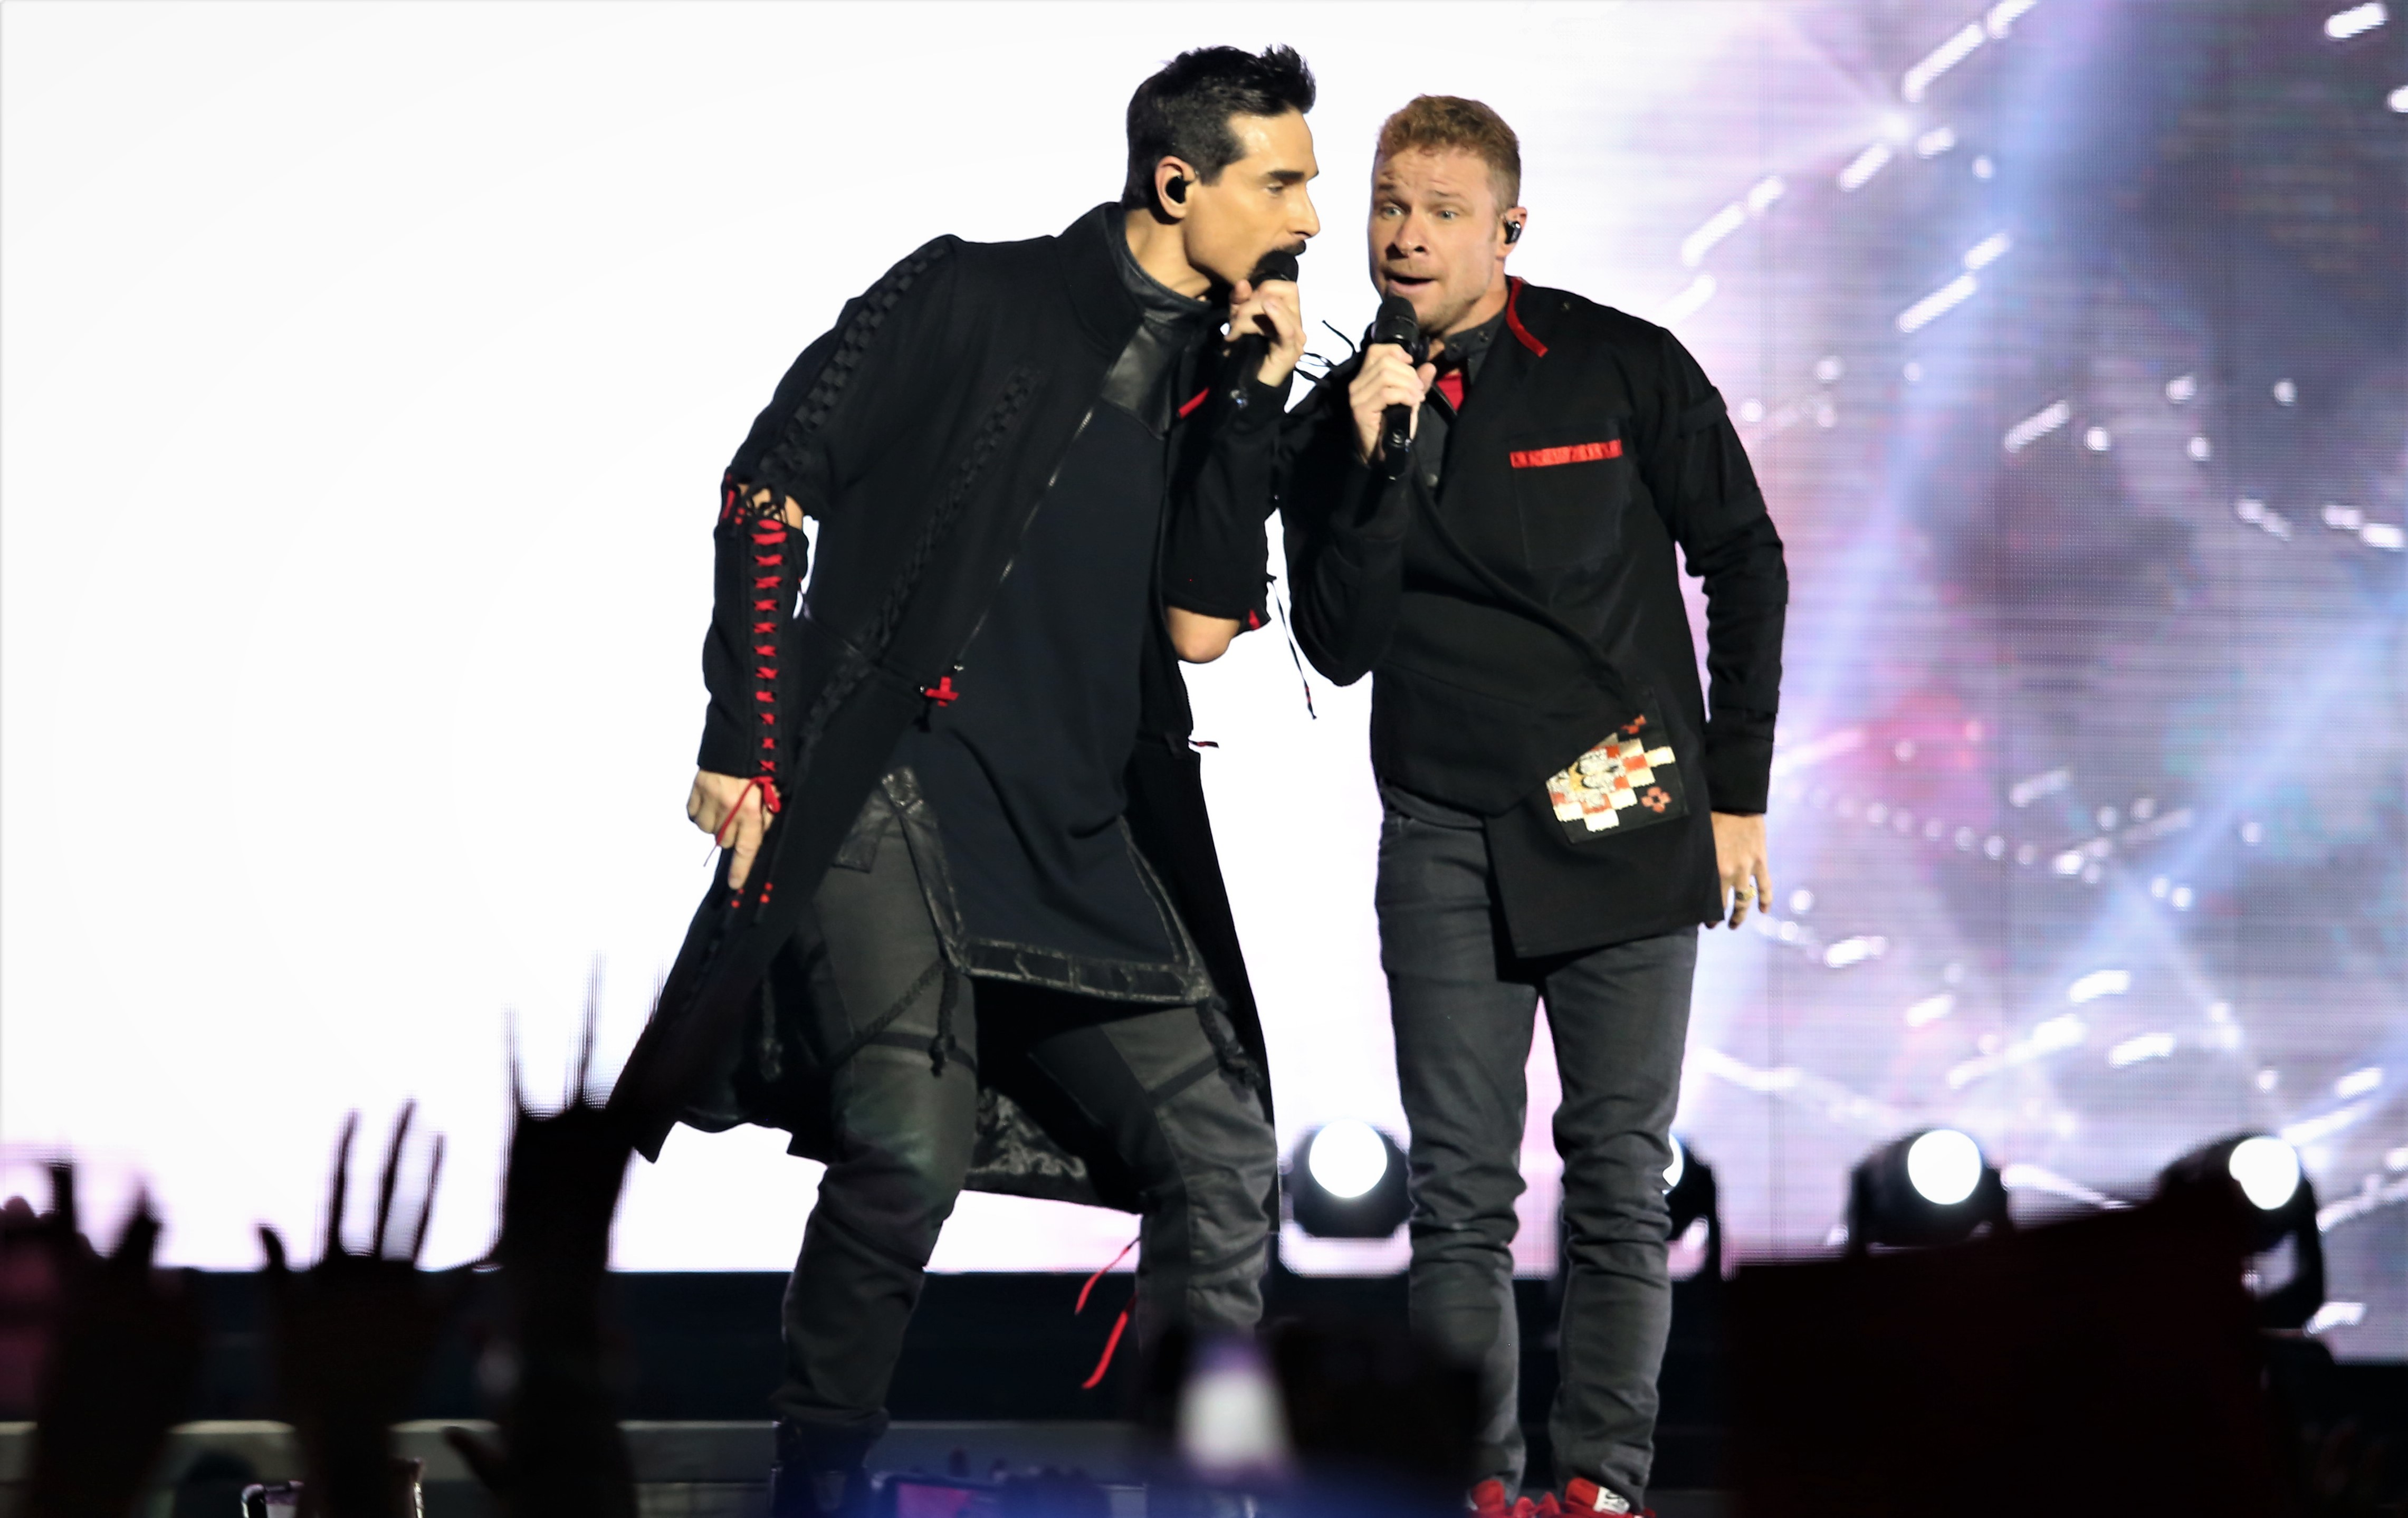 Kevin e Brian cantam lado a lado durante um show no México, em março de 2020 (Foto: Getty Images)